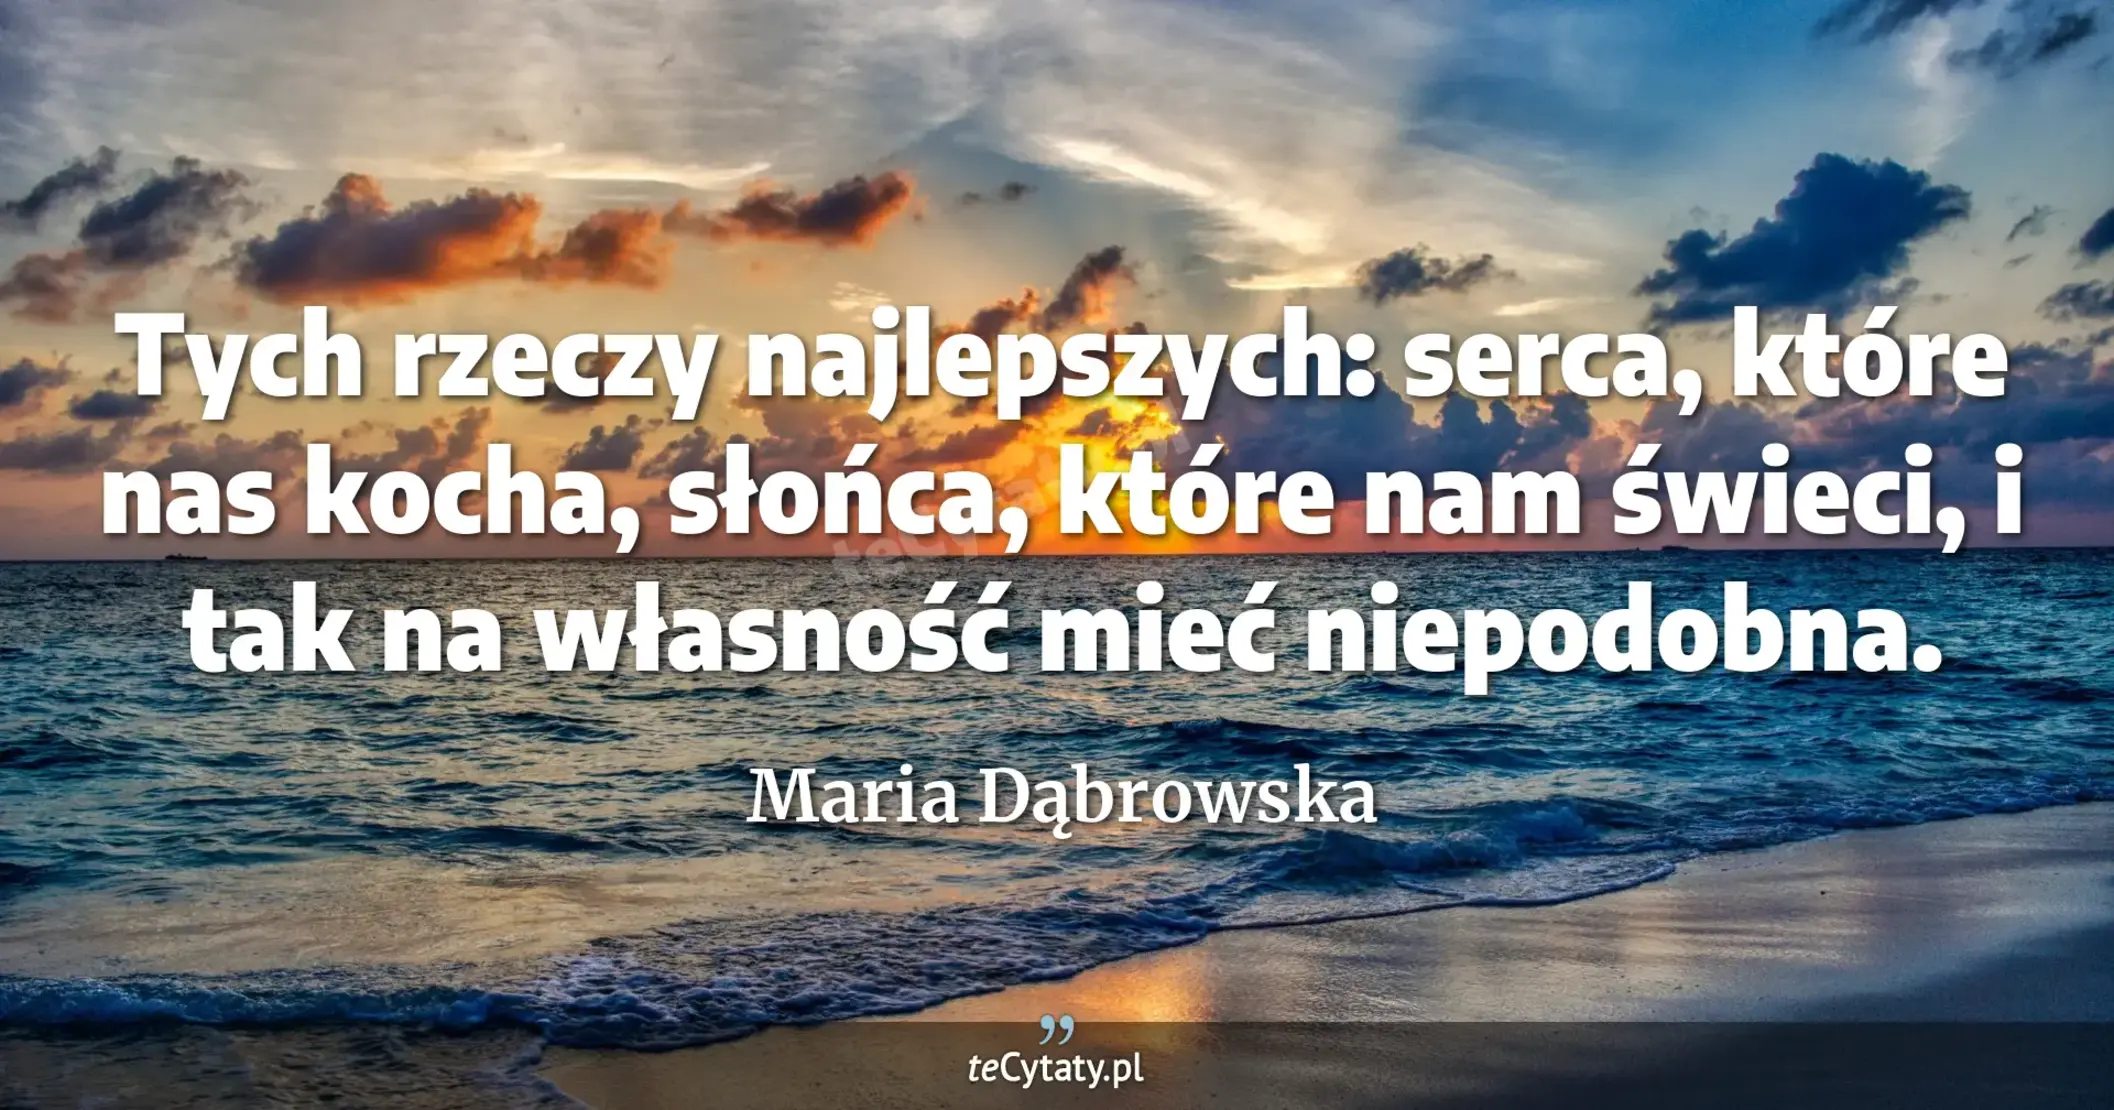 Tych rzeczy najlepszych: serca, które nas kocha, słońca, które nam świeci, i tak na własność mieć niepodobna. - Maria Dąbrowska